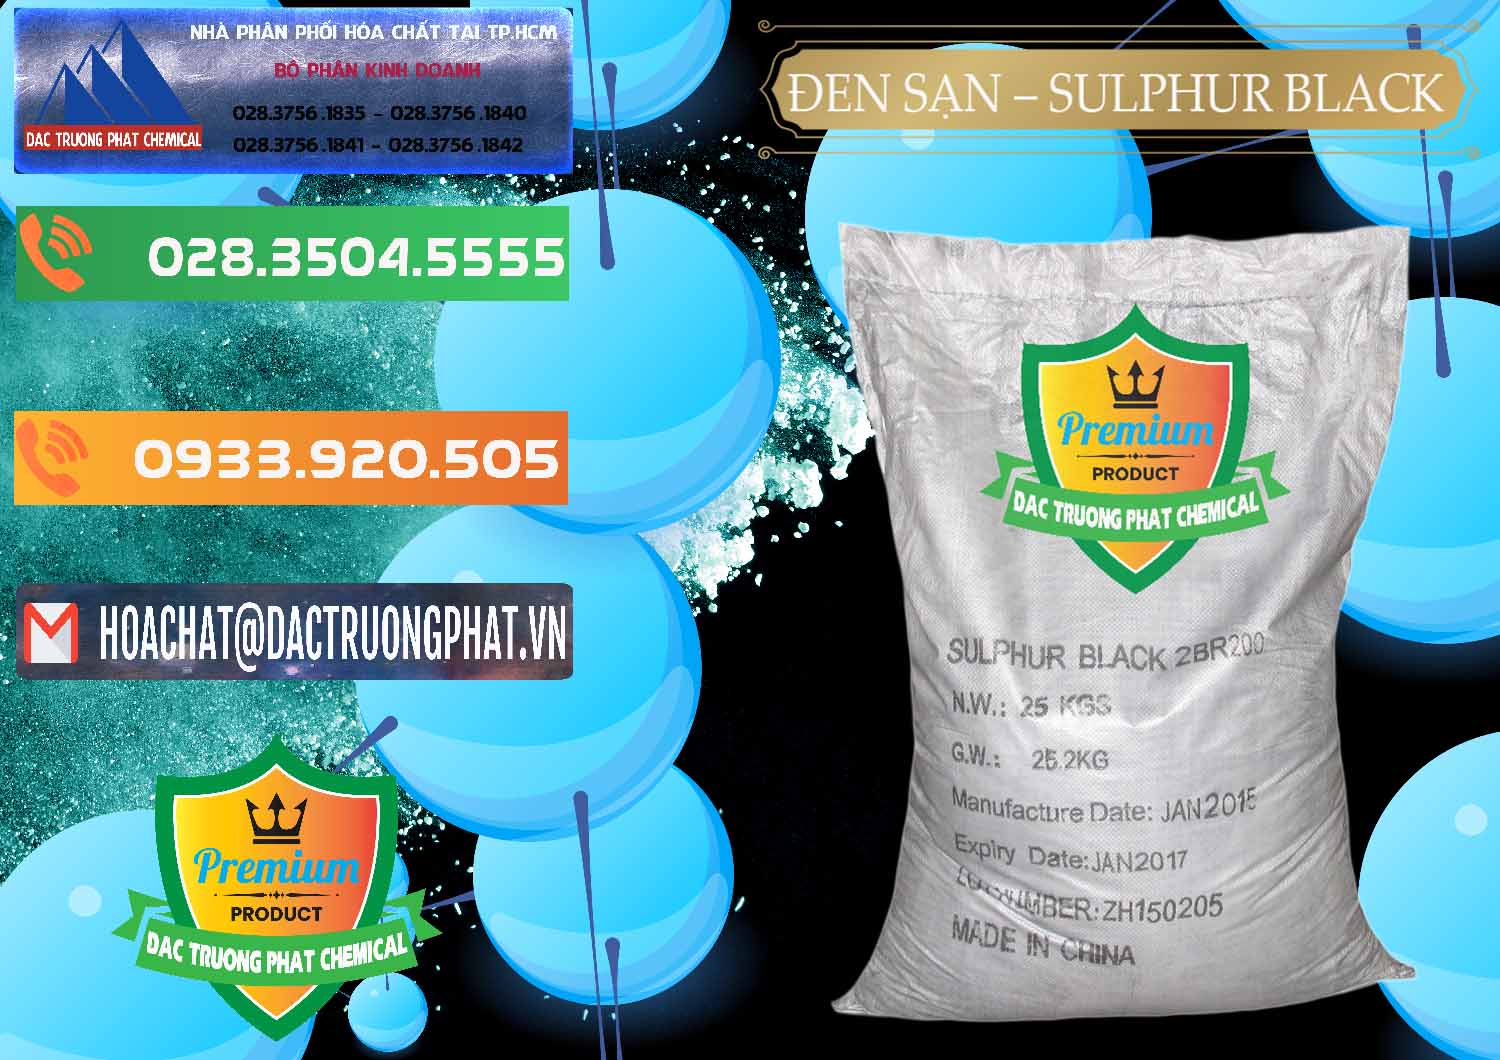 Nơi cung cấp và bán Đen Sạn – Sulphur Black Trung Quốc China - 0062 - Nơi cung cấp và kinh doanh hóa chất tại TP.HCM - hoachatxulynuoc.com.vn